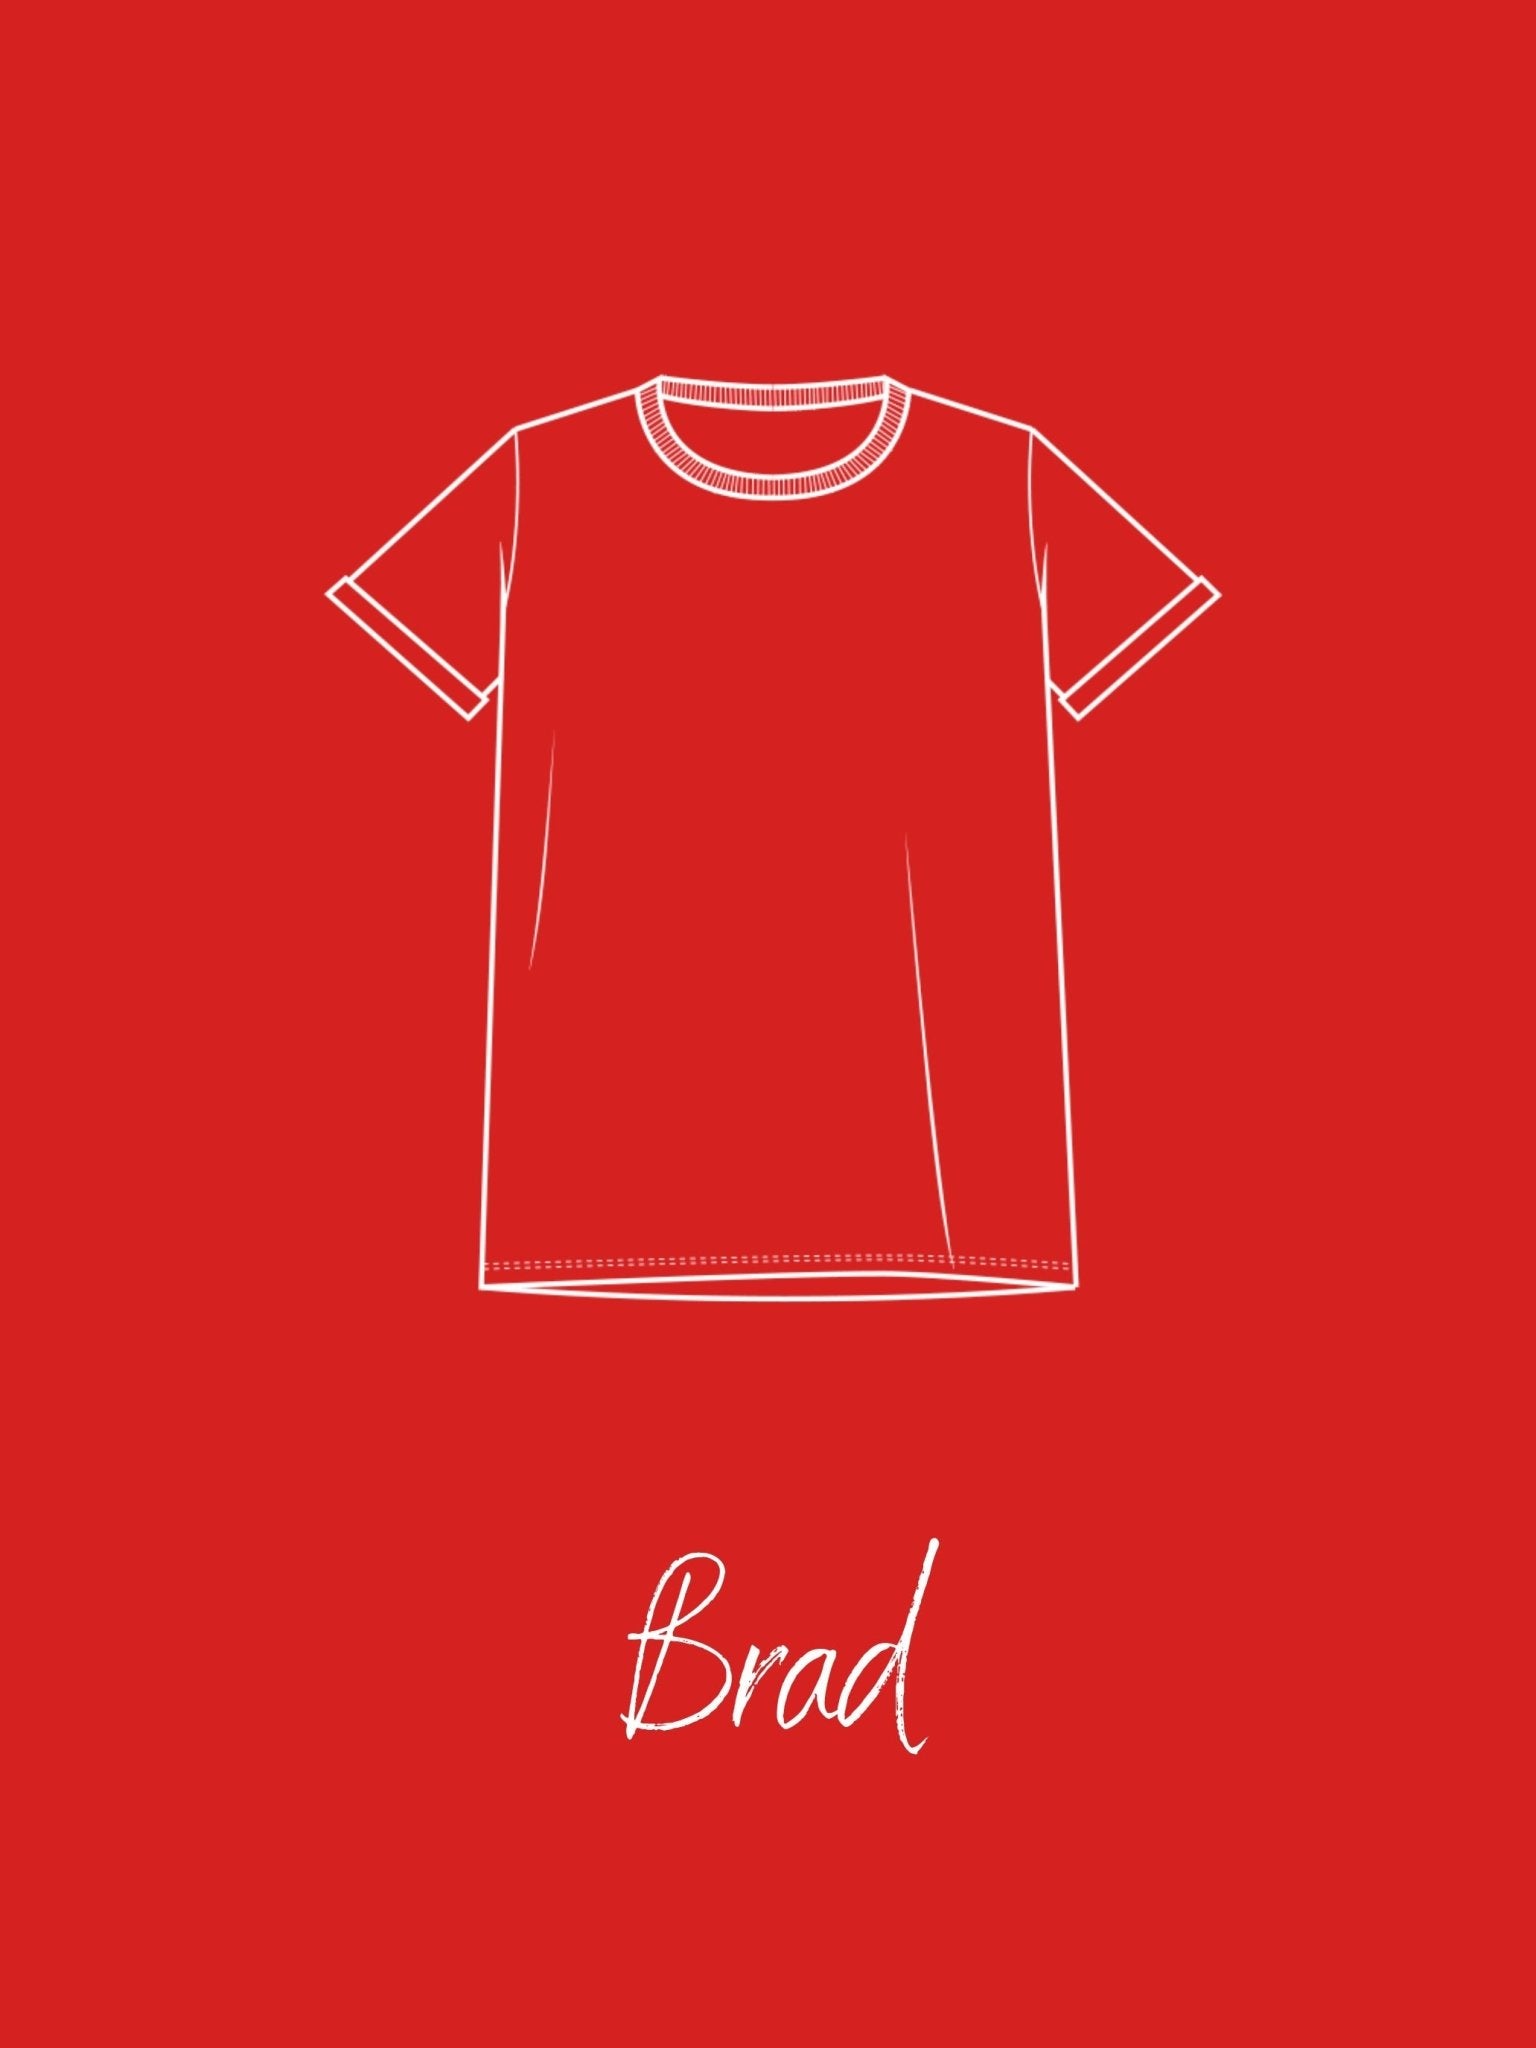 Joli Kit Couture - T-shirt Brad adulte rouge - Joli Lab